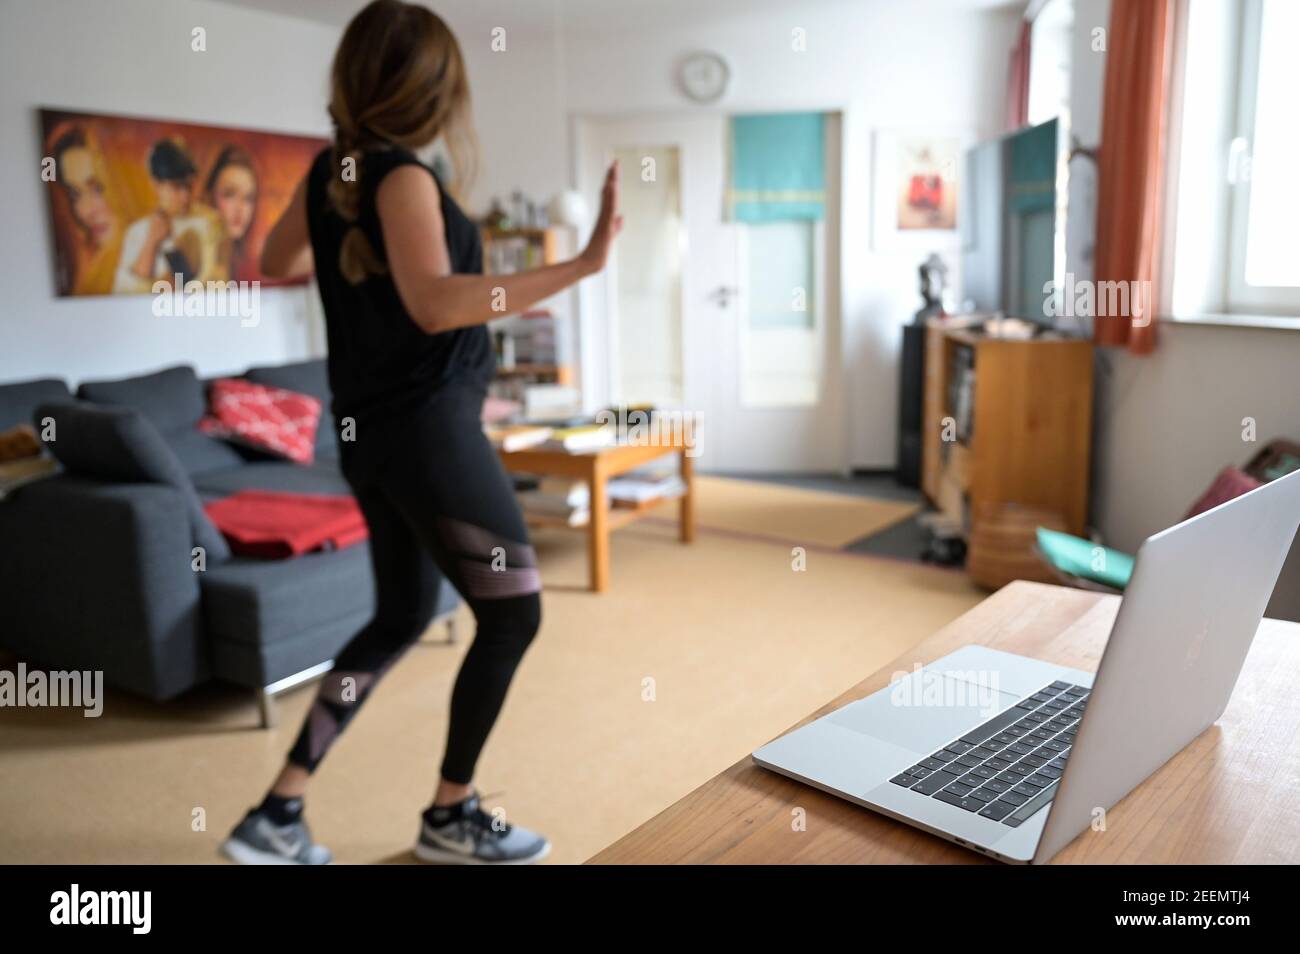 ALLEMAGNE, Hambourg, corona pandémie, jeune femme faisant du sport à la maison avec la diffusion en ligne de club de sport, Apple macbook écran avec Zumba danse session Banque D'Images